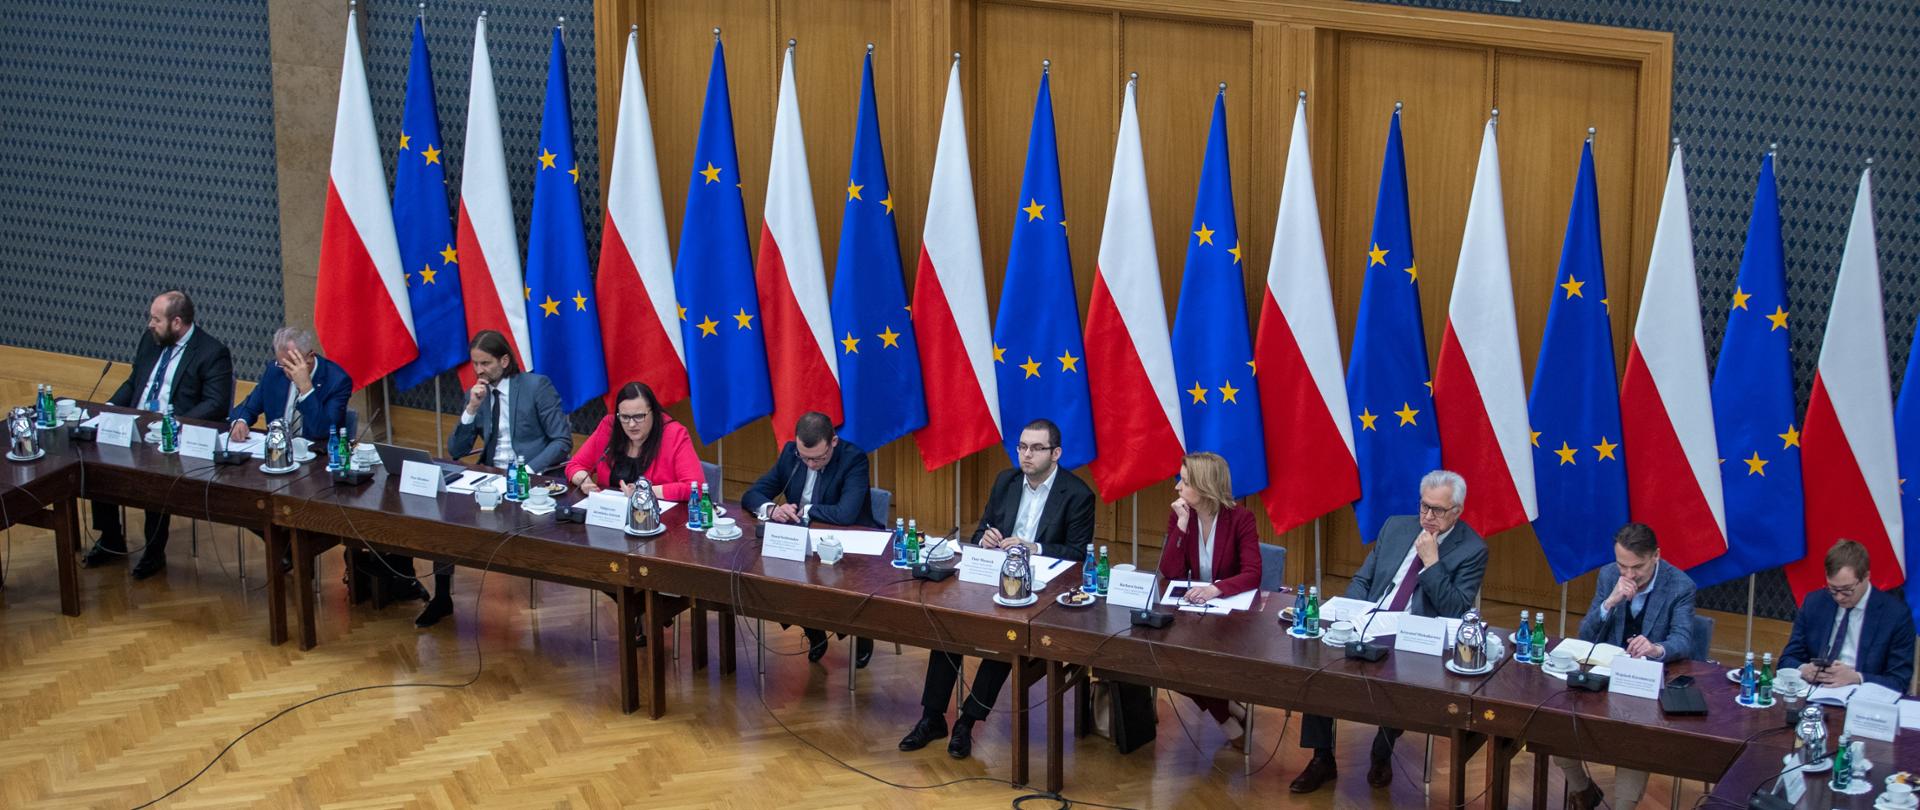 Na sali obrad przy długim stole siedzi grupa osób. Za nimi flagi Polski i Unii Europejskiej.